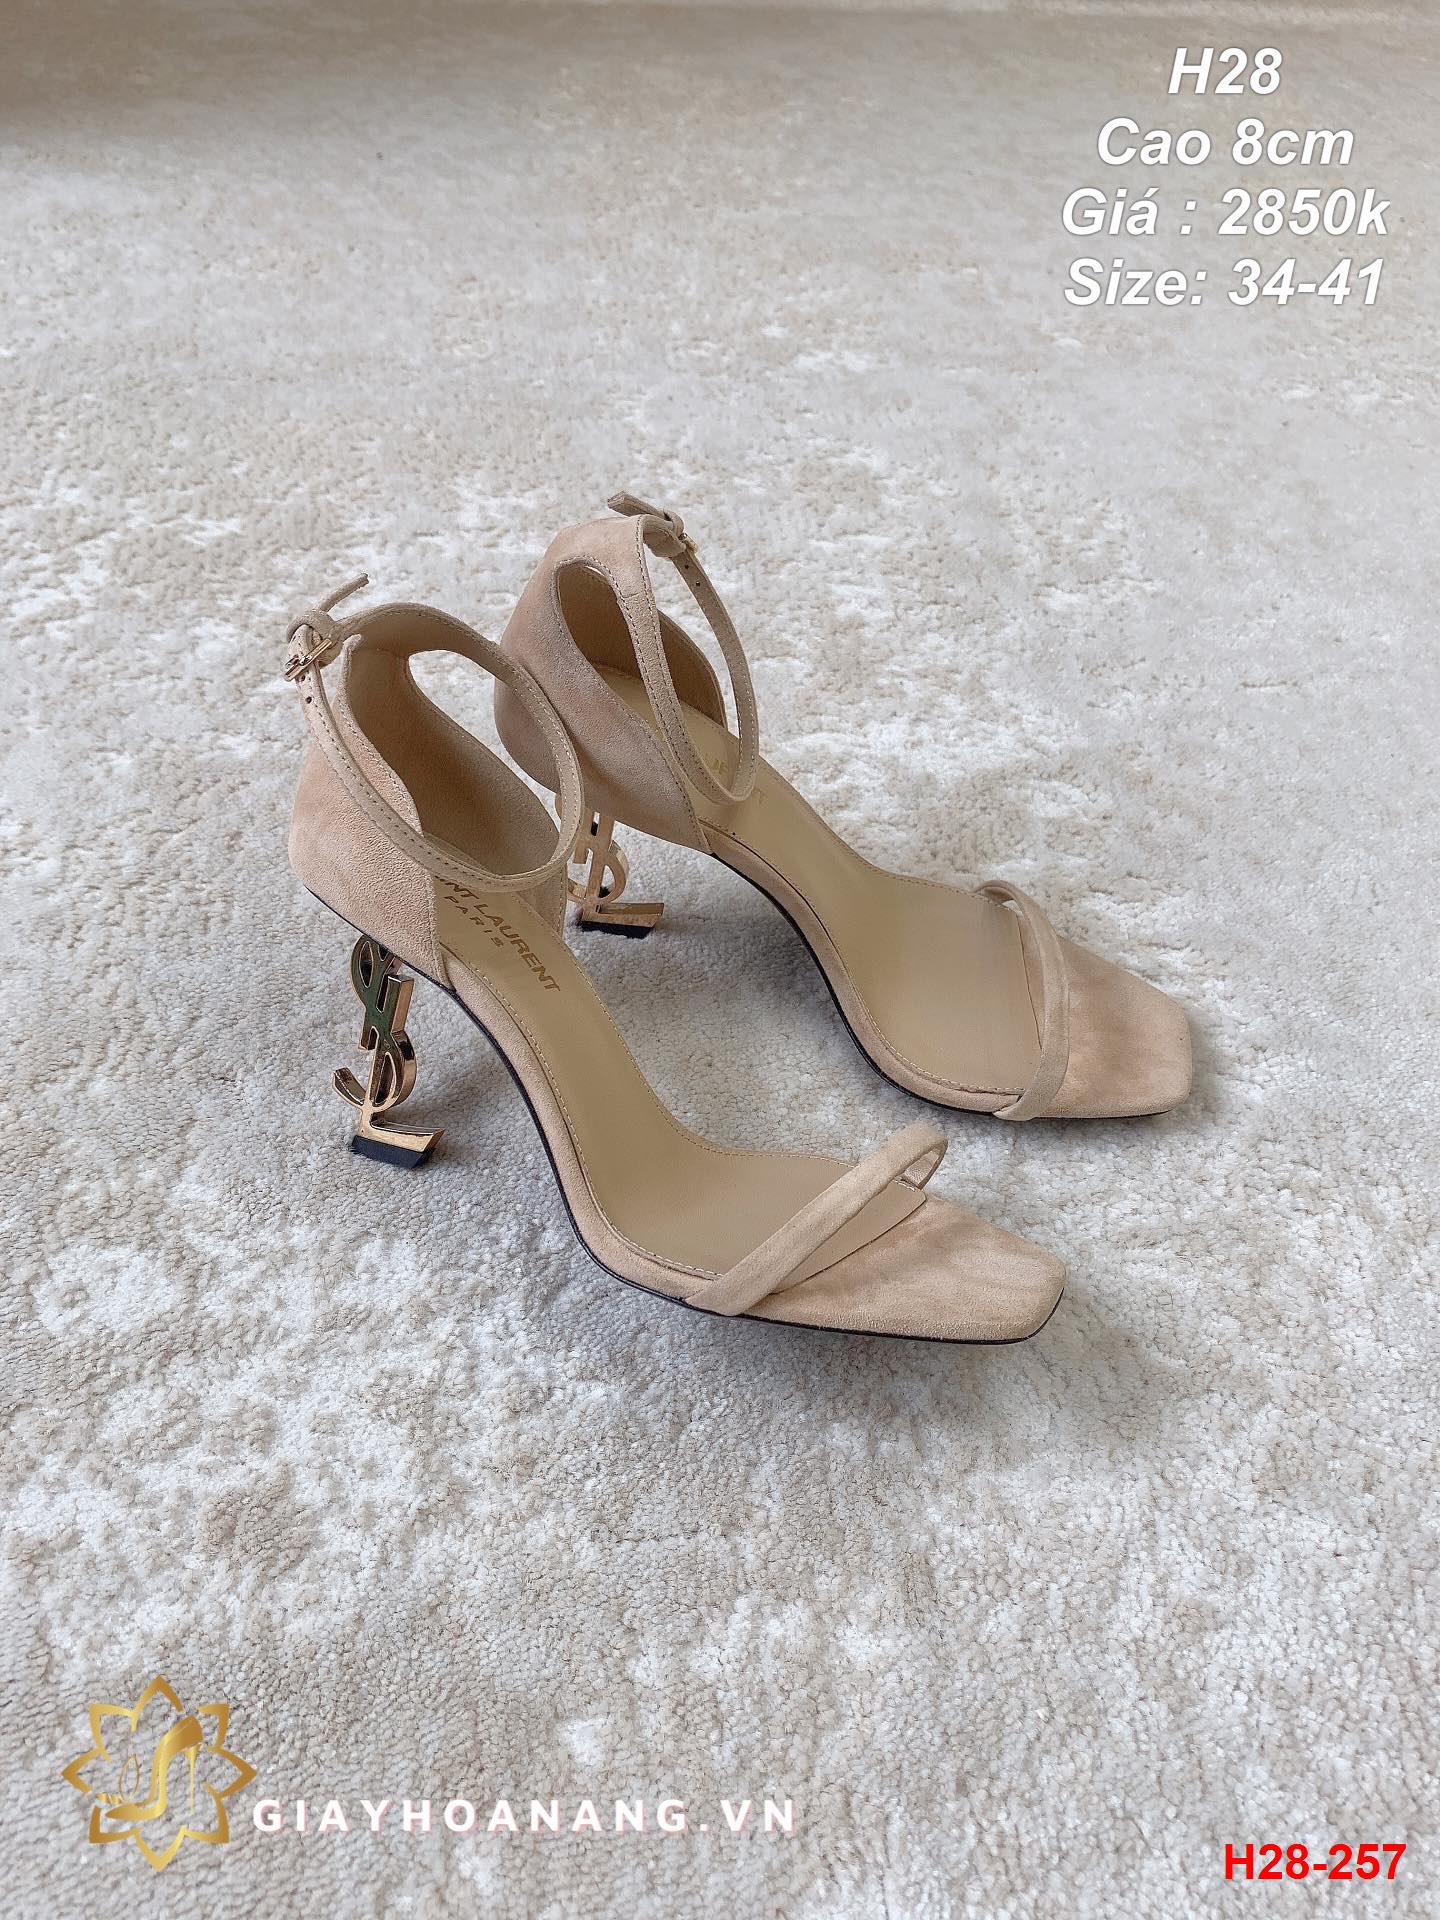 H28-257 Saint Laurent sandal cao 8cm siêu cấp